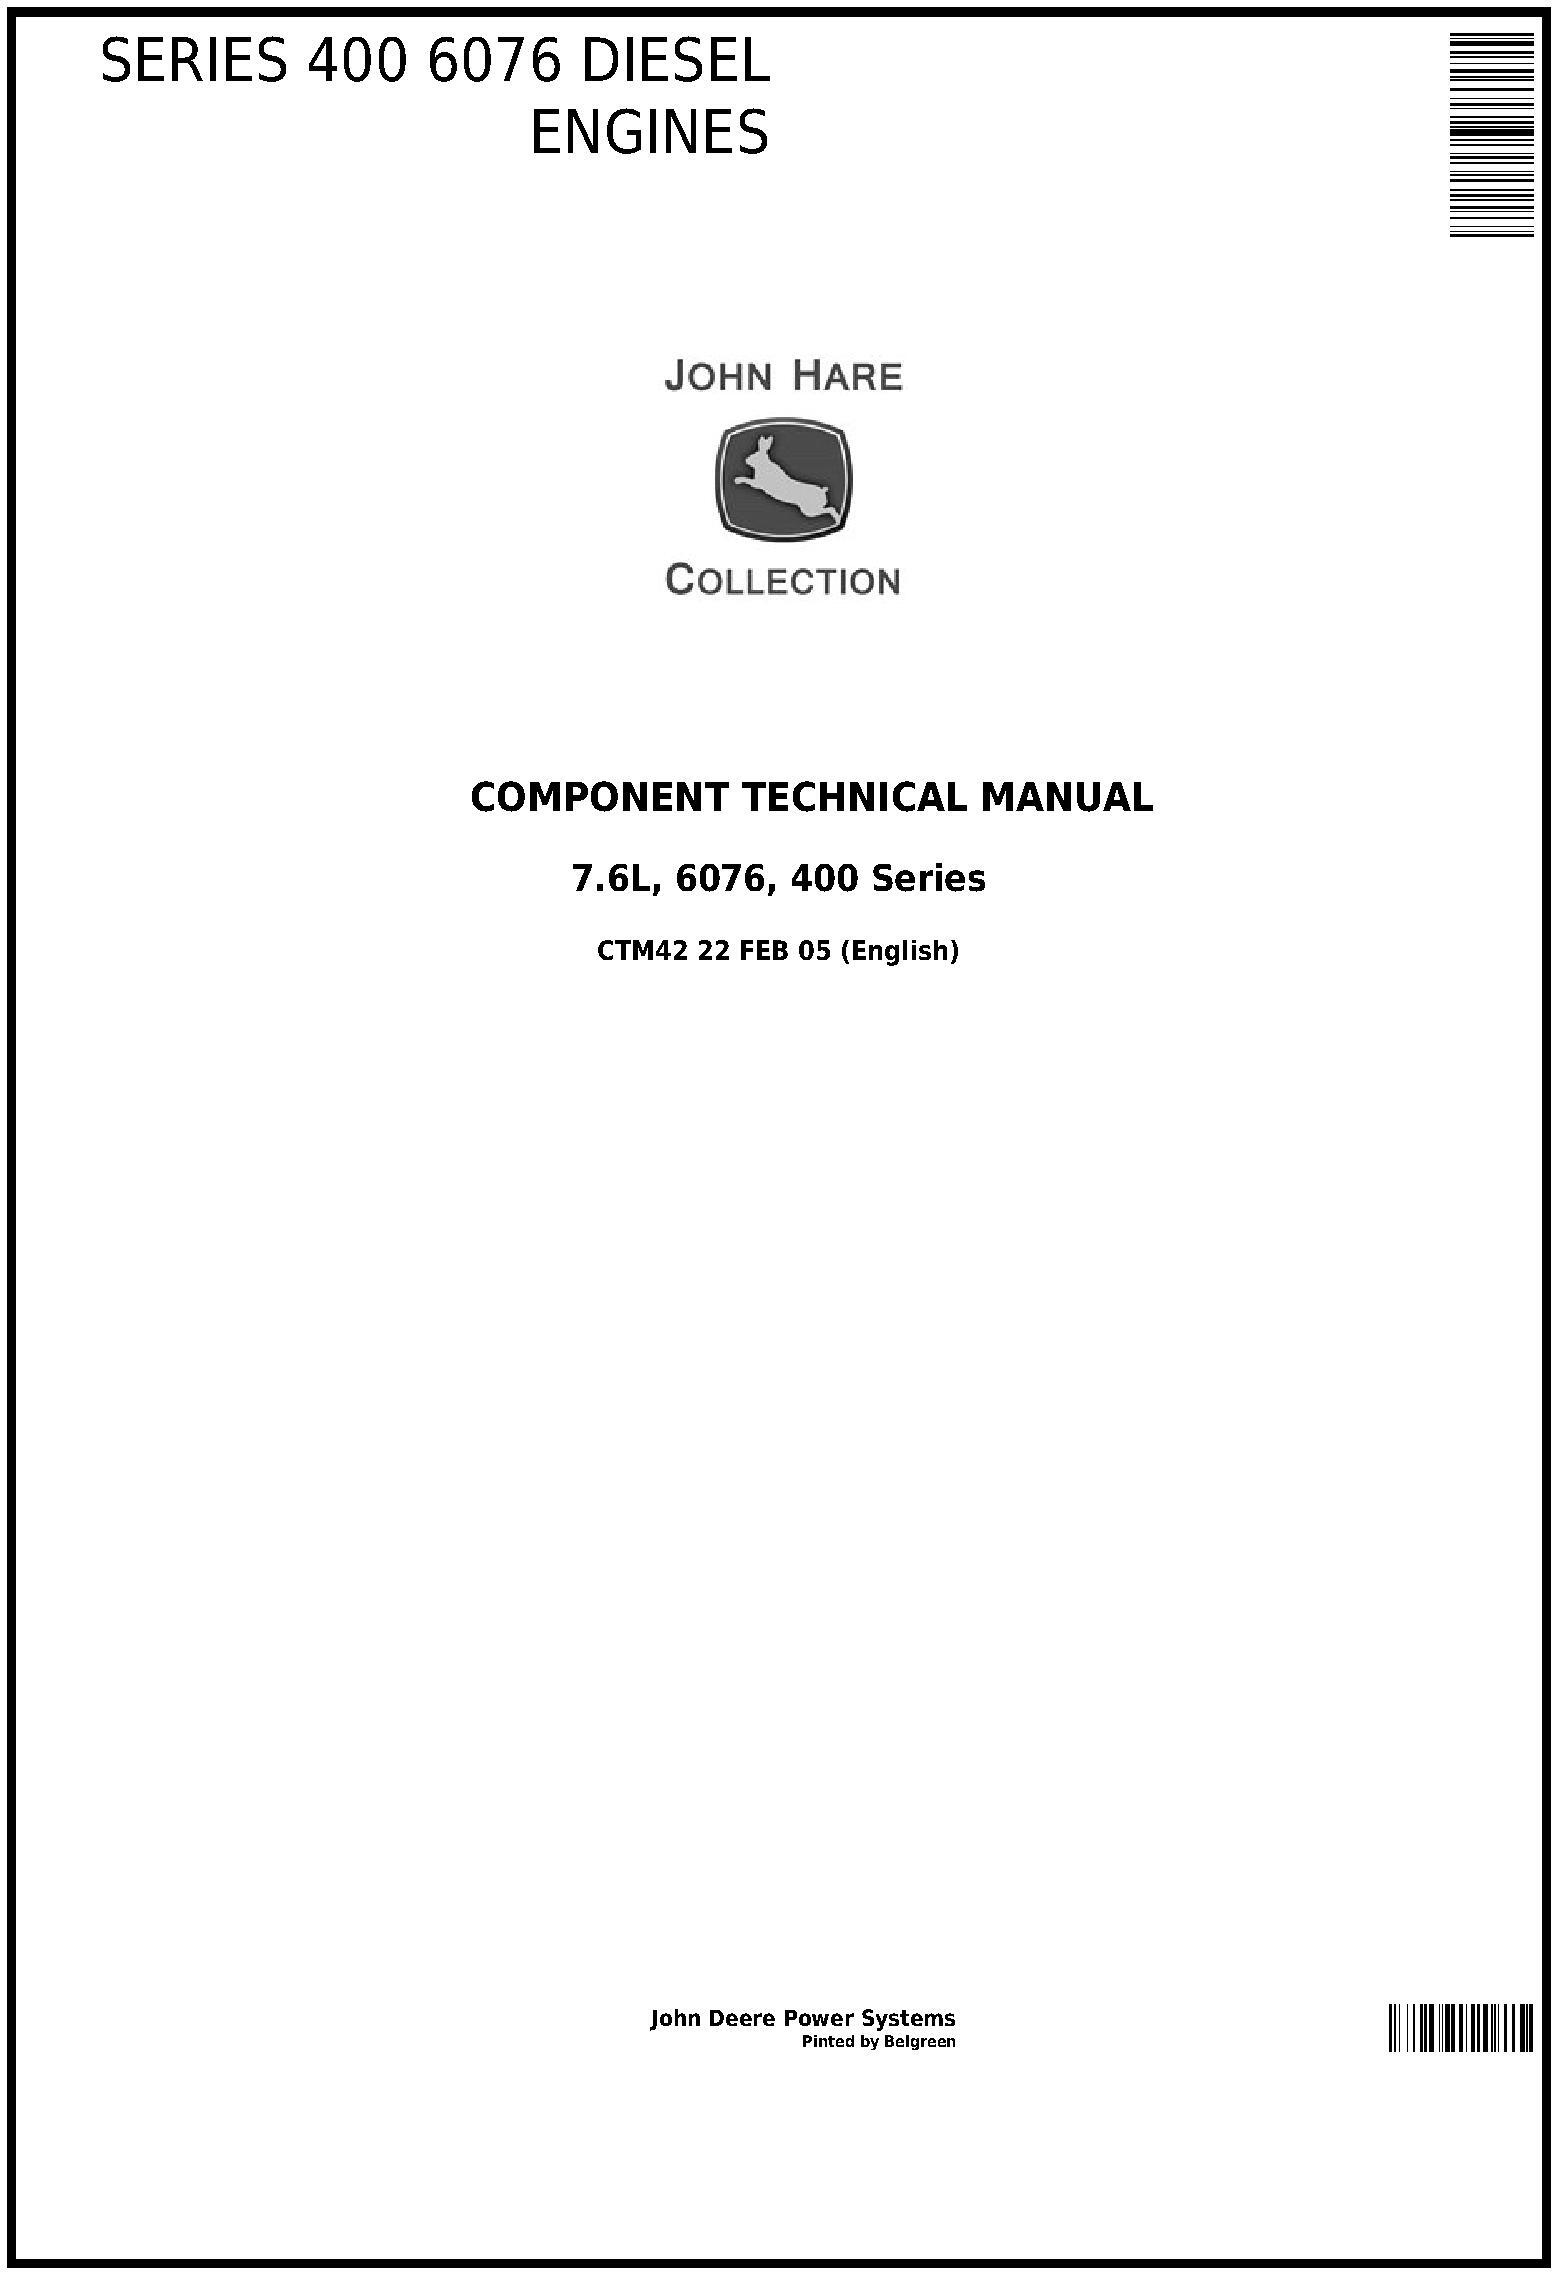 John Deere Series 400 6076 Diesel Engine Component Technical Manual CTM42